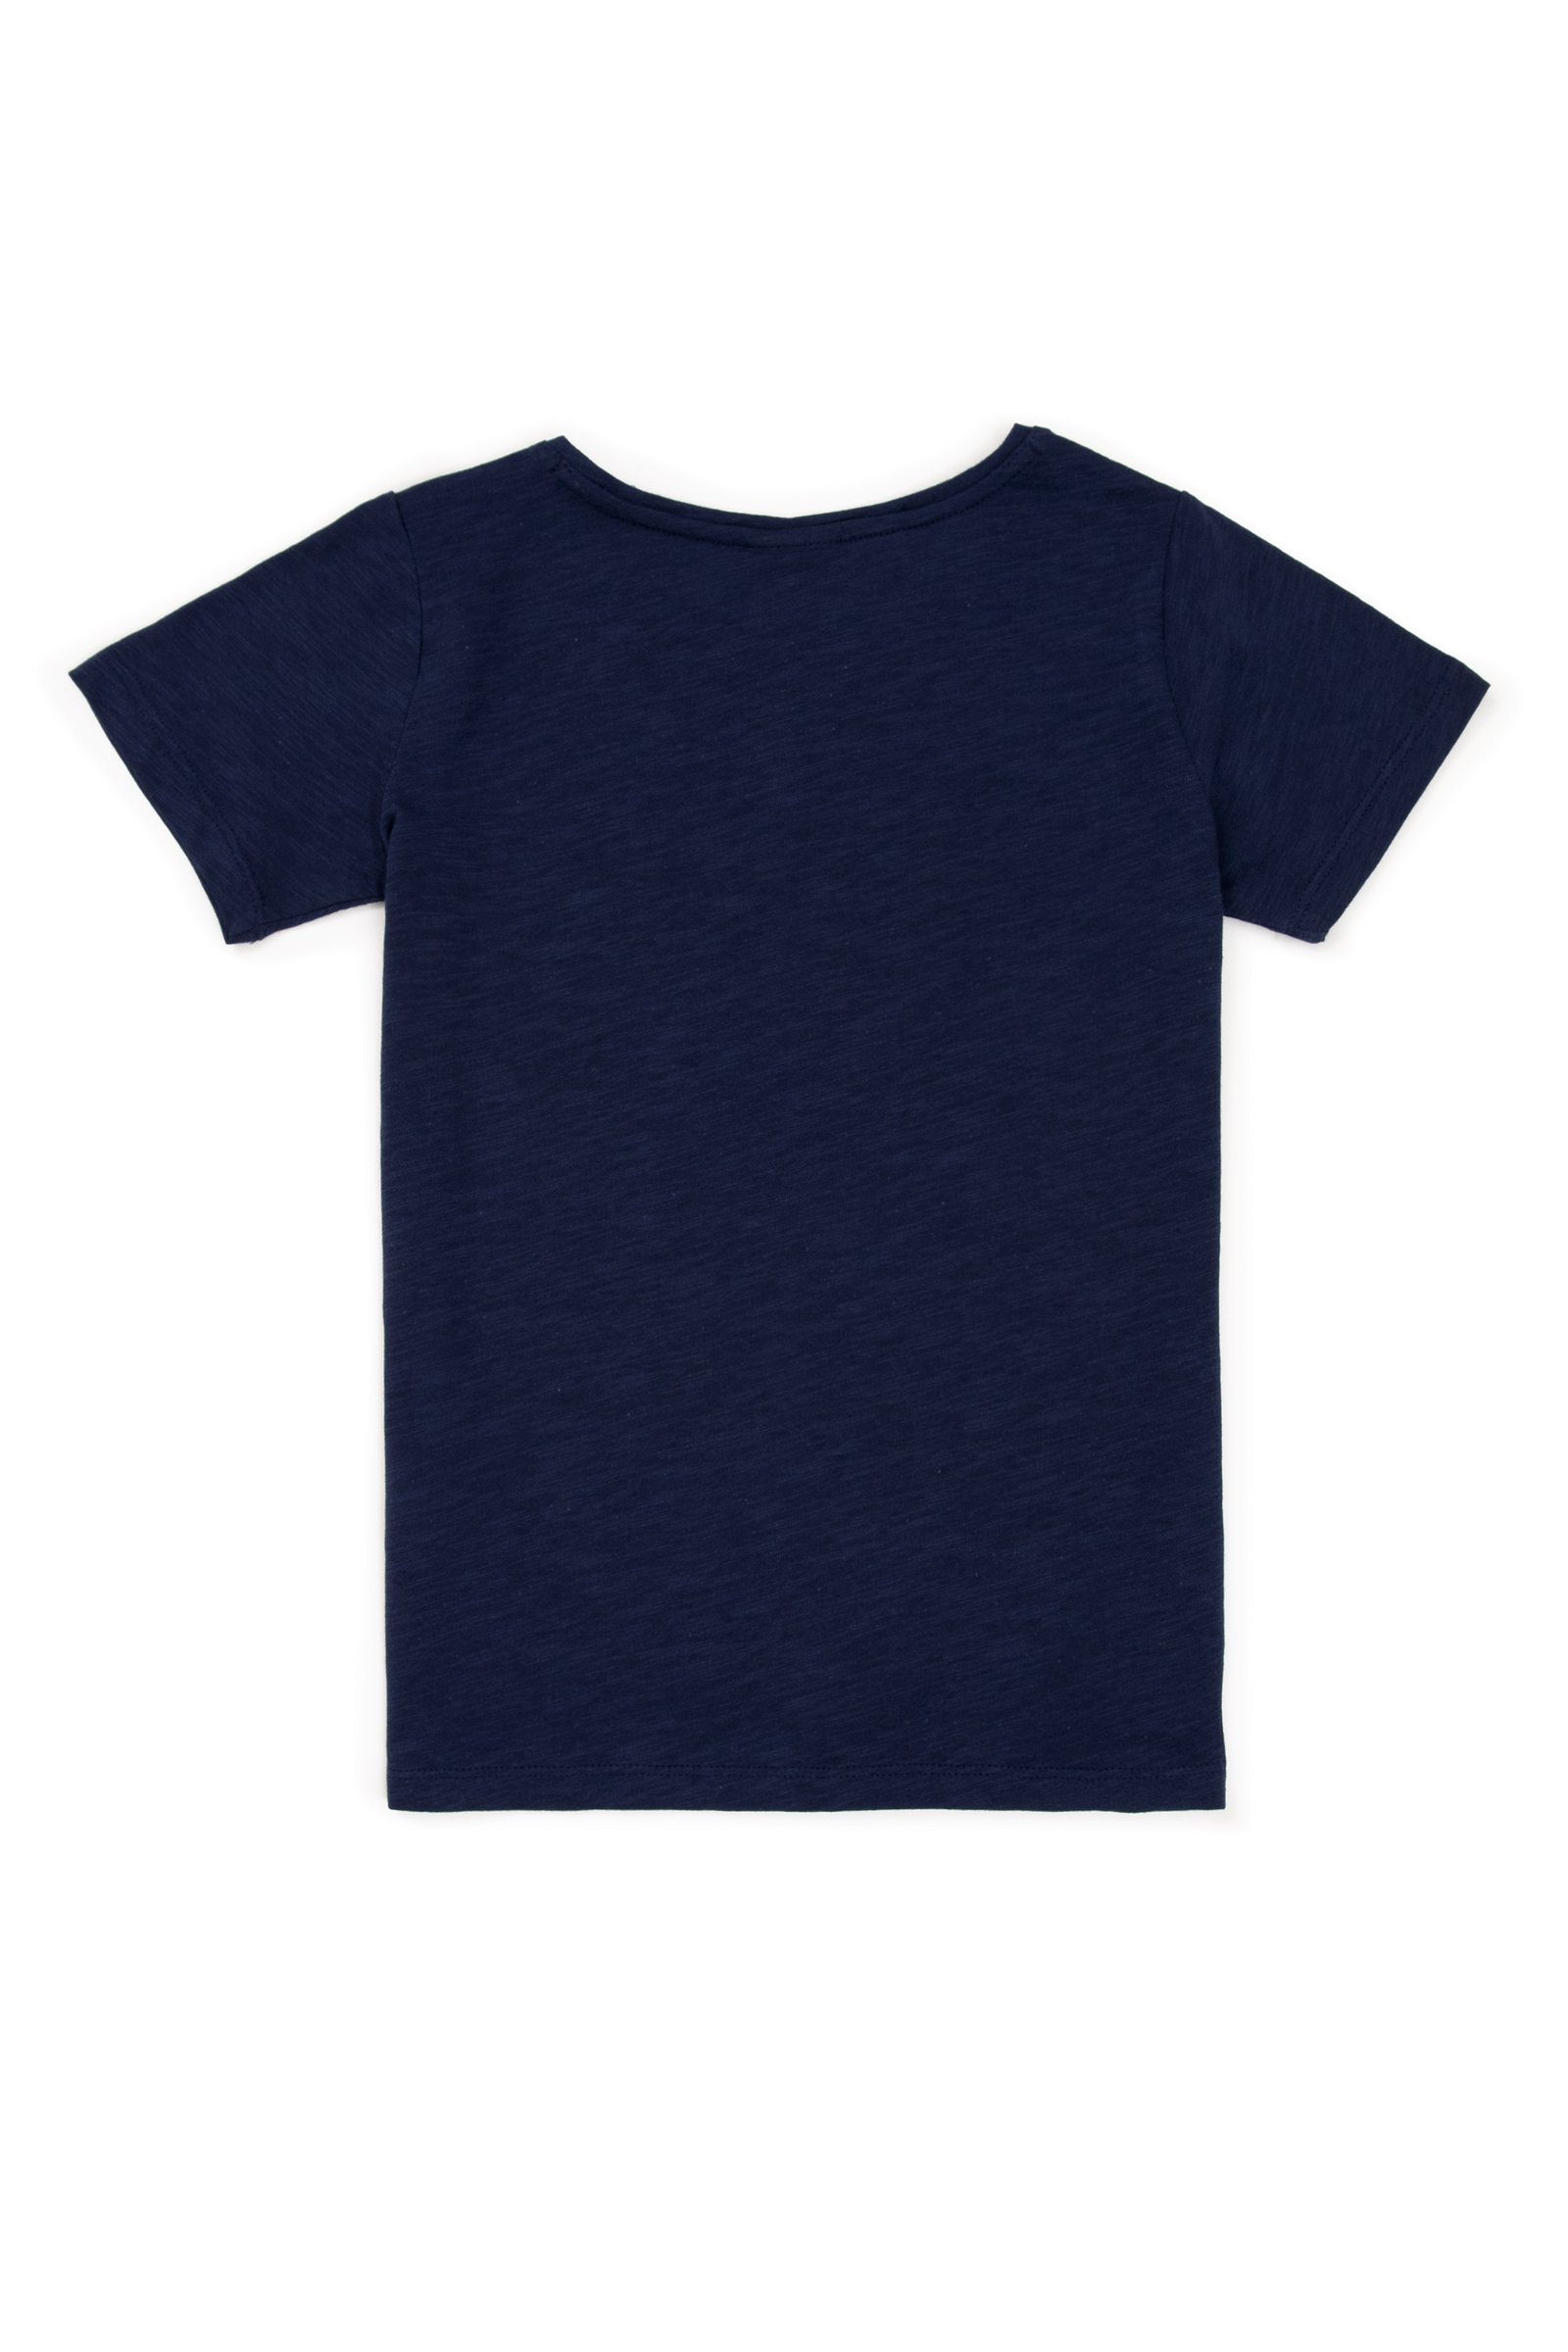 تی شرت  لاجورد  استاندارد فیت  دخترانه یو اس پولو